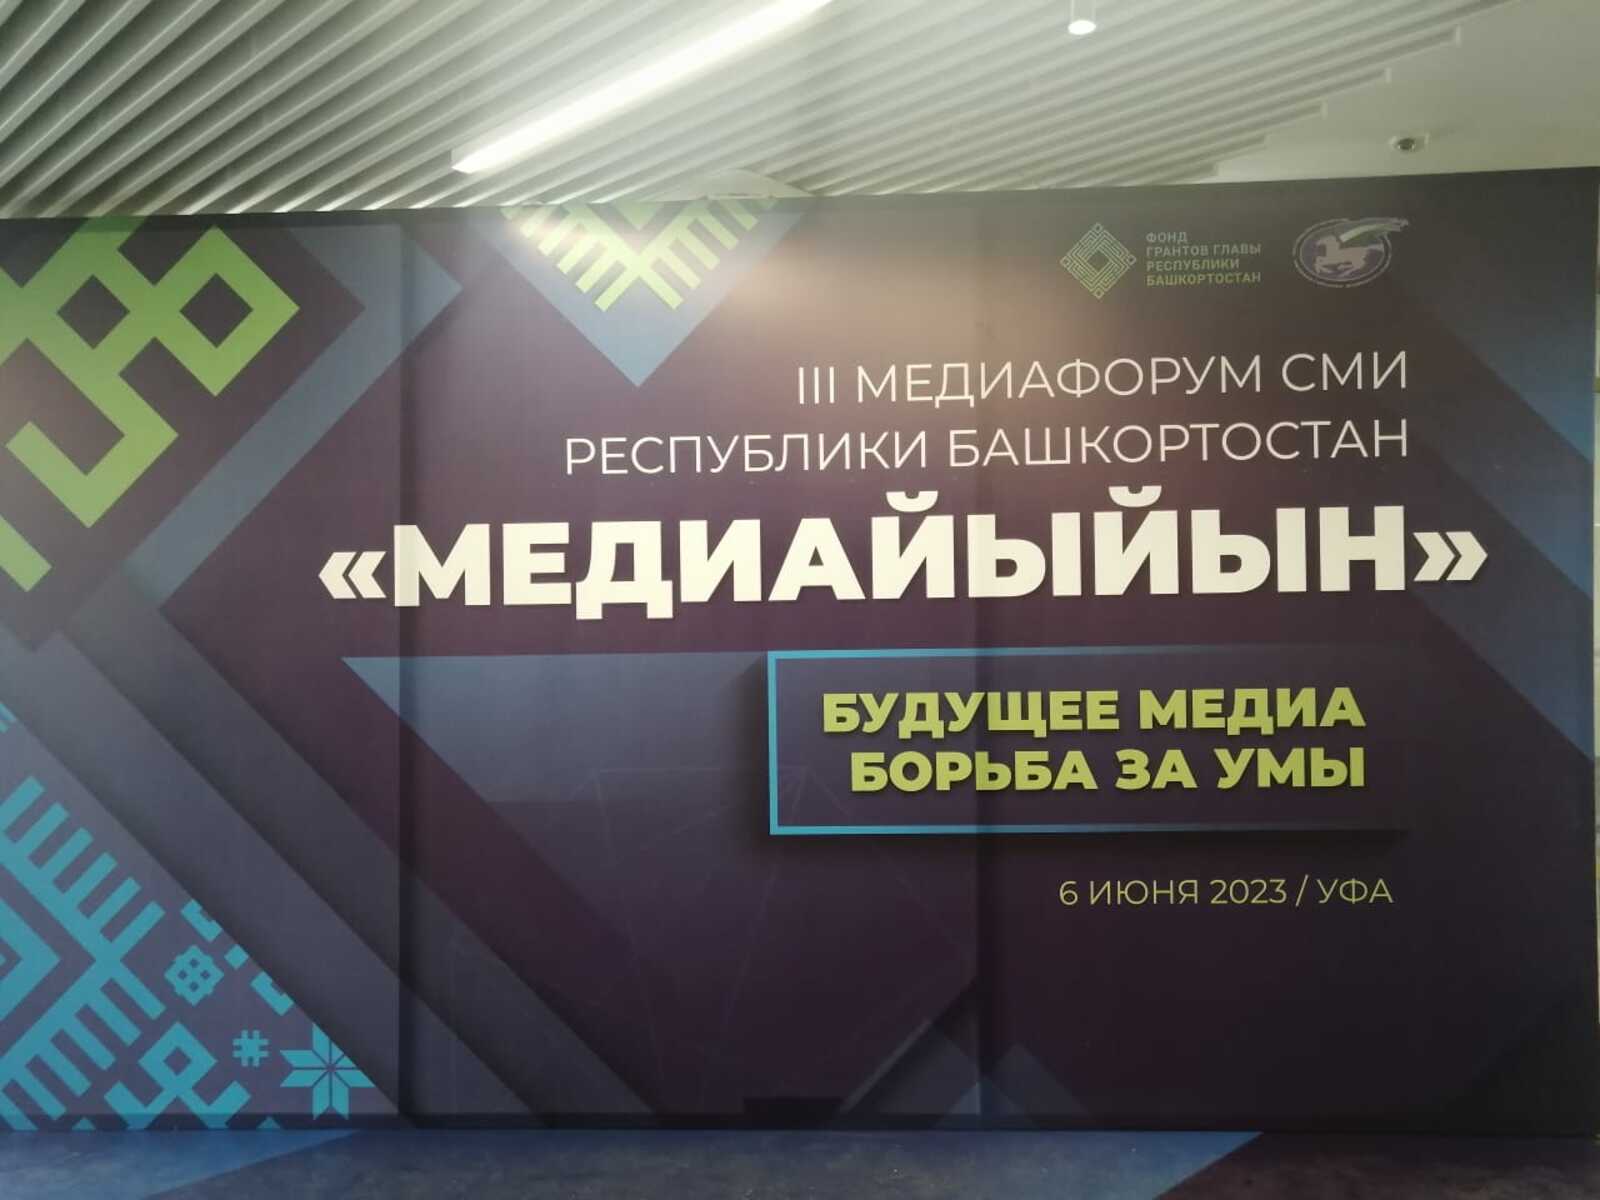 6 июндә Өфөлә республиканың киң мәғлүмәт сараларының "Медиайыйын-2023" форумы үтте